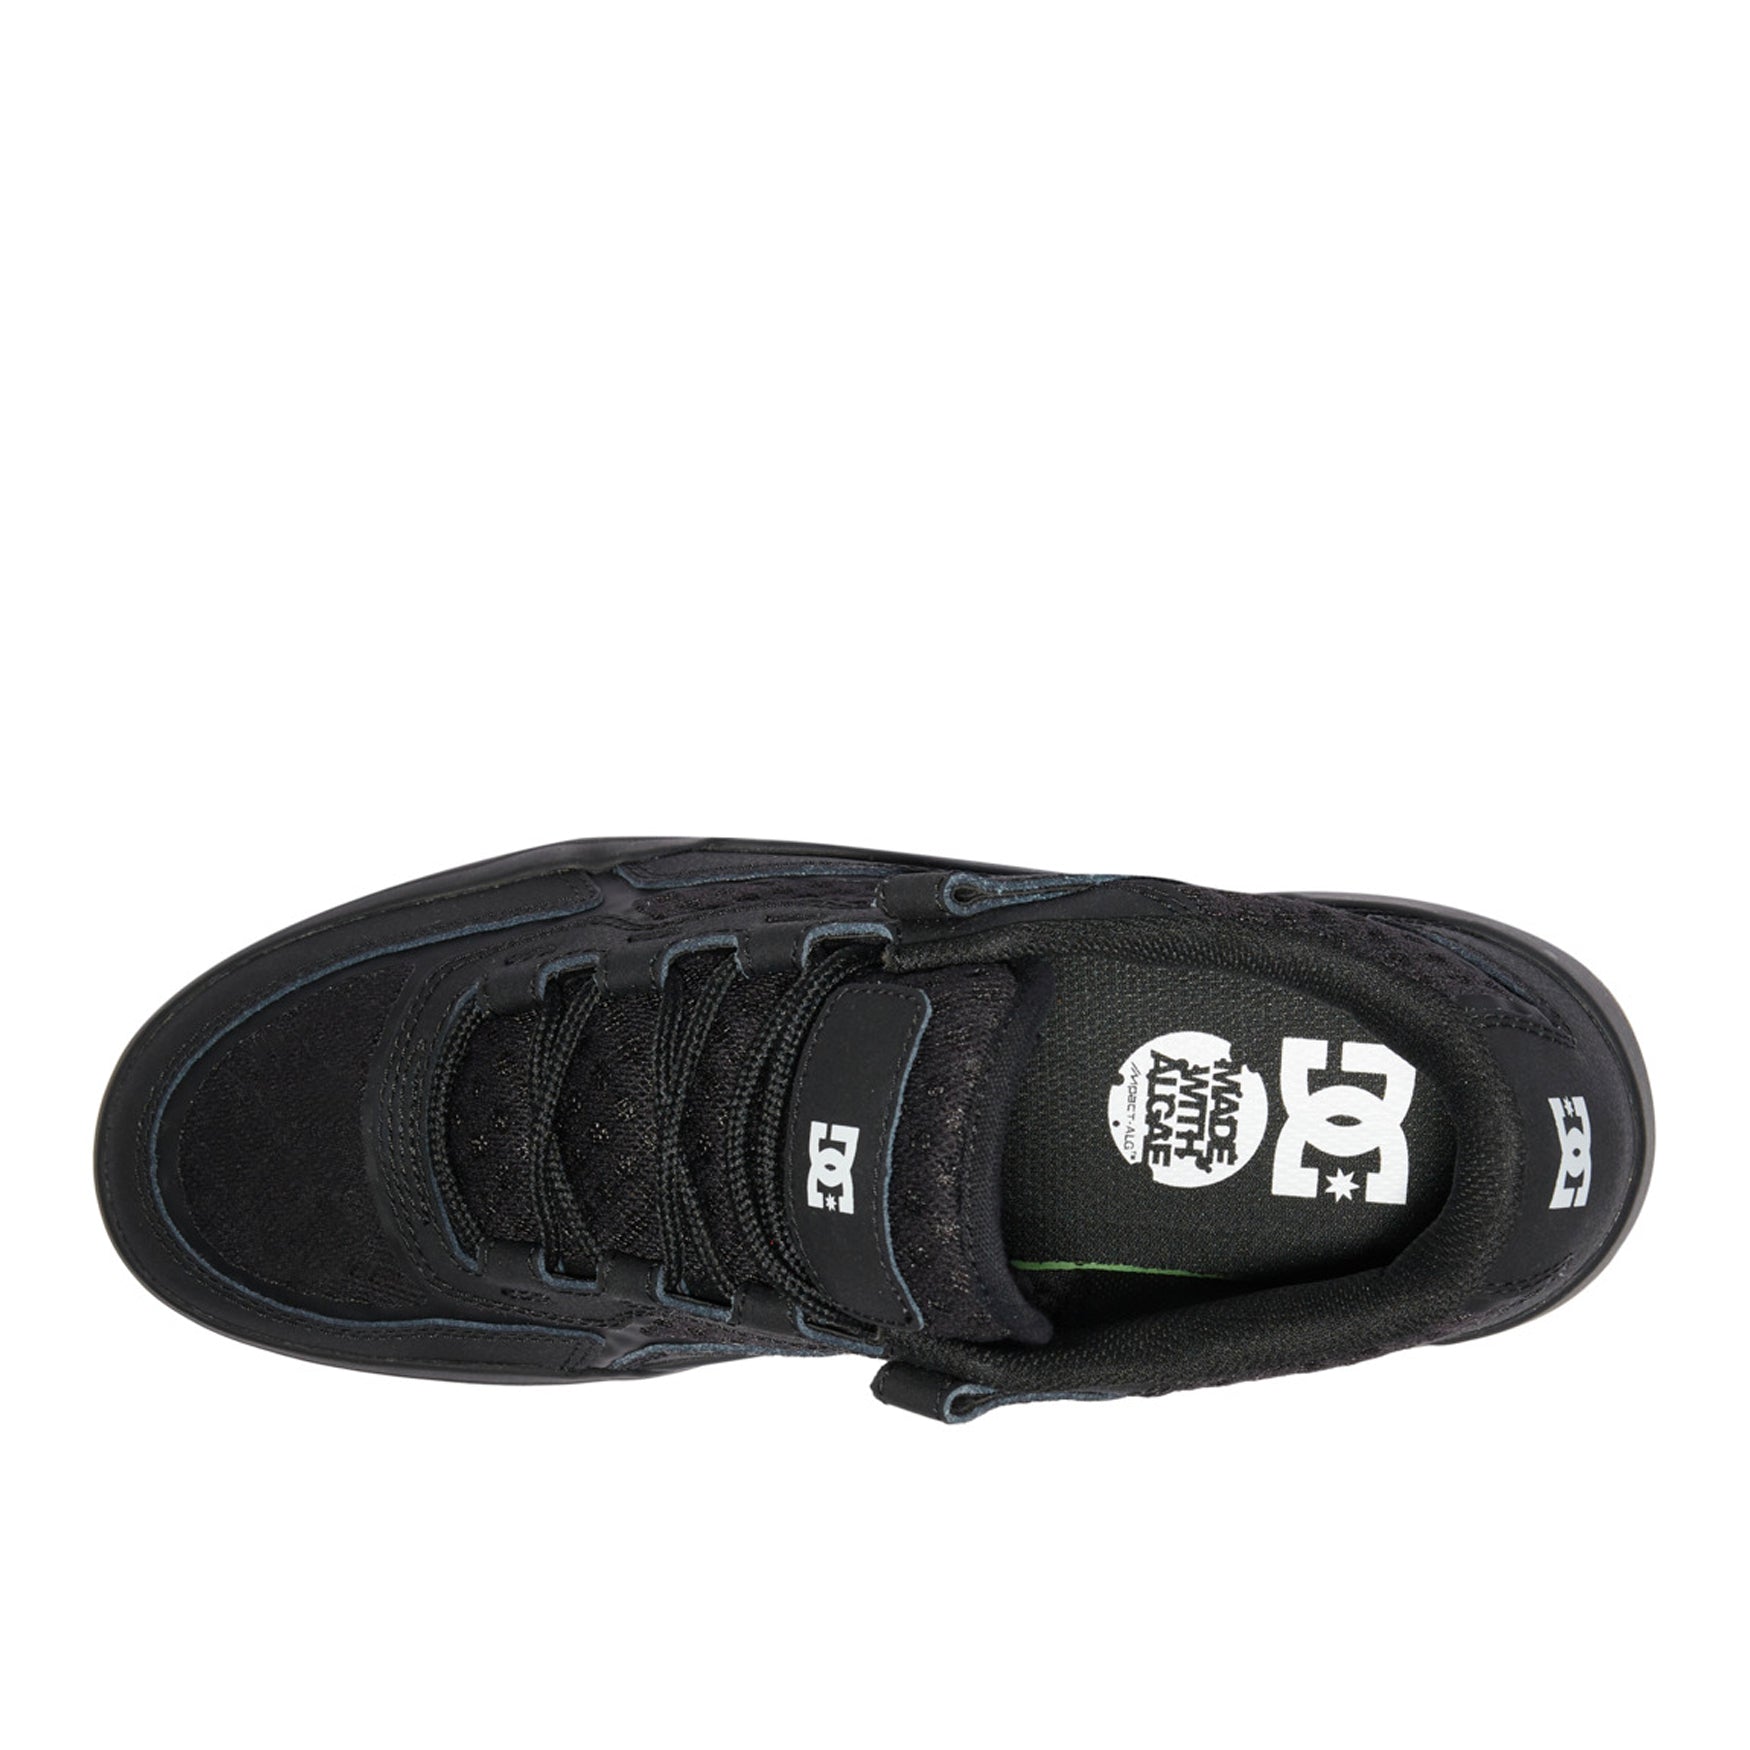 DC Metric Shoes - Black/ Black/ Gum - Prime Delux Store